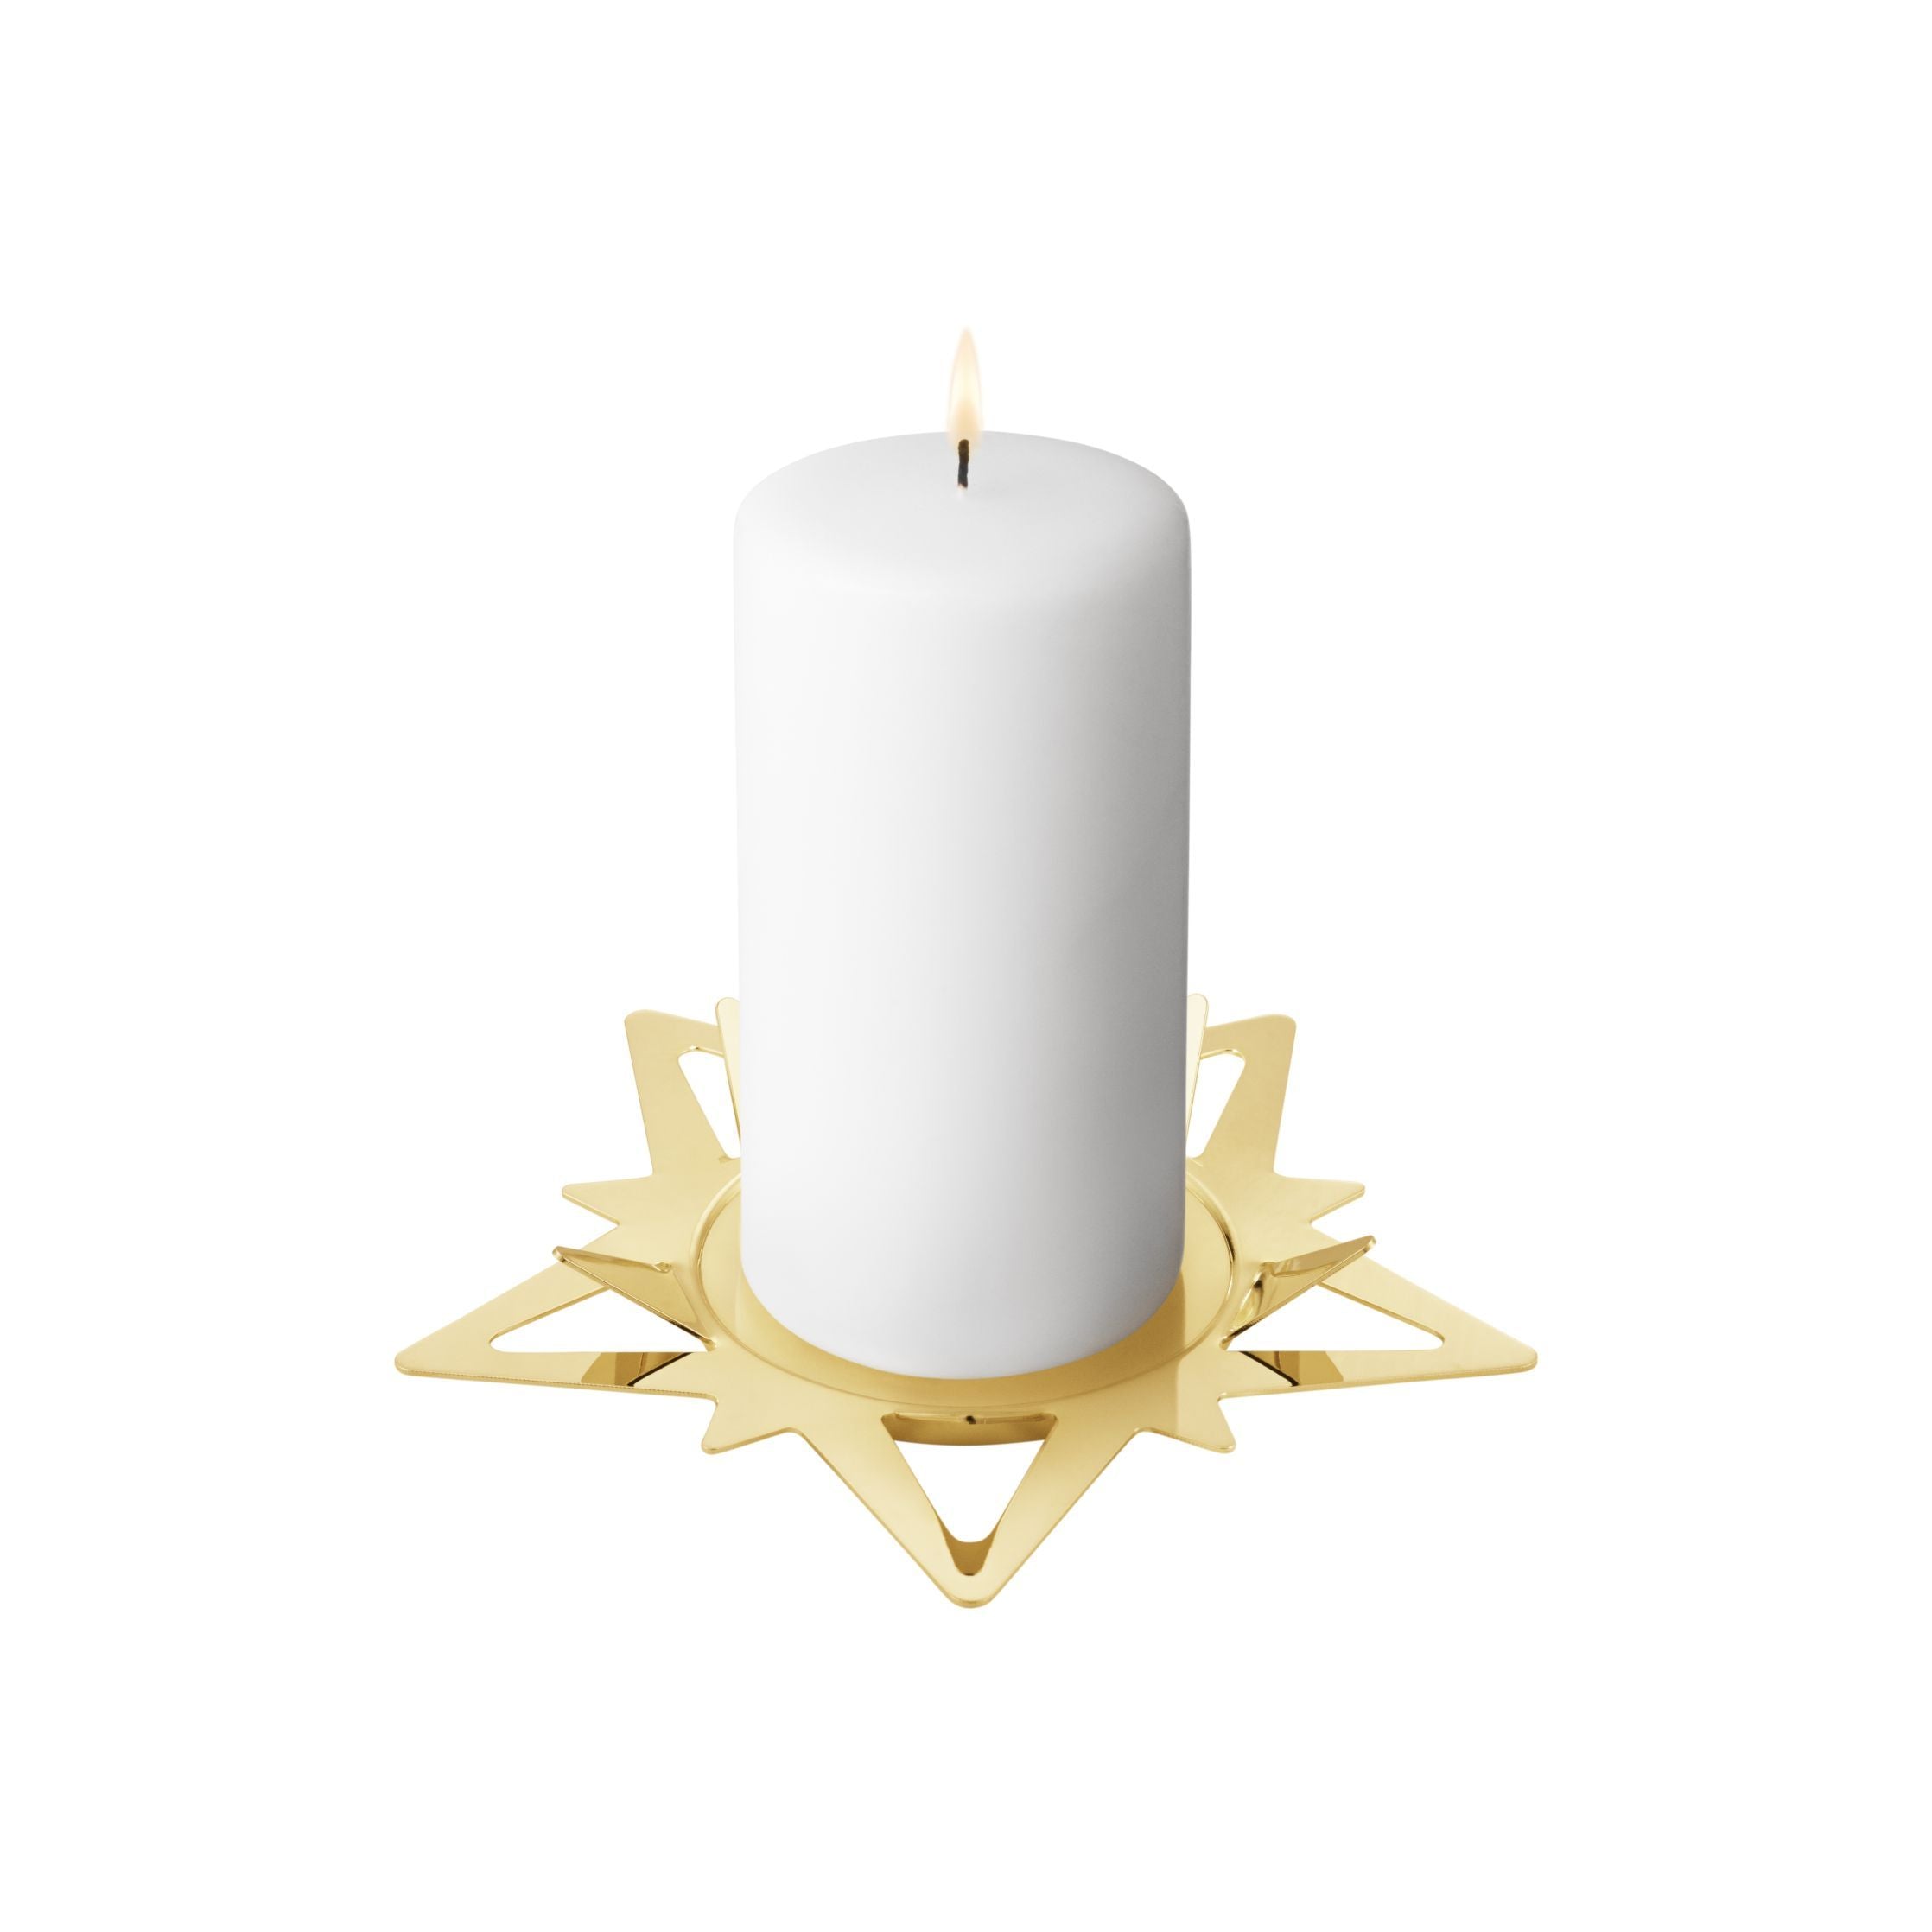 Porta di candele della stella natalizia di Georg Jensen per candele a blocchi, oro placcato